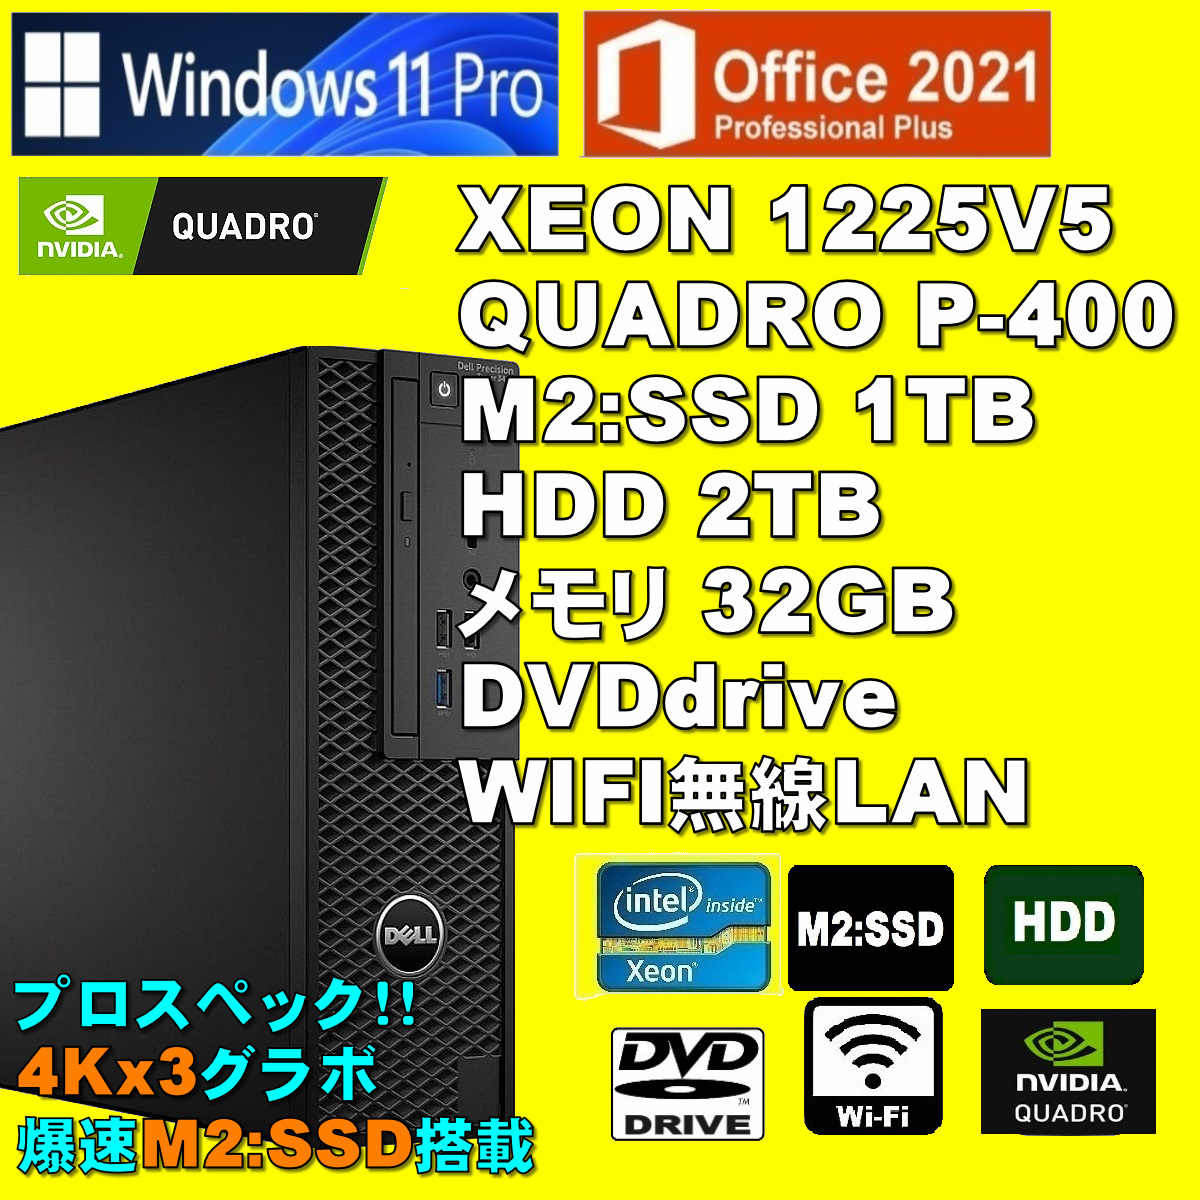 プロスペック!4Kx3画面 XEON-1225V5/ QUADRO P-400/ 新品M2:SSD-1TB/ HDD-2TB/ メモリ-32GB/ DVD/ Win11Pro/ Office2021Pro/ メディア15_画像1